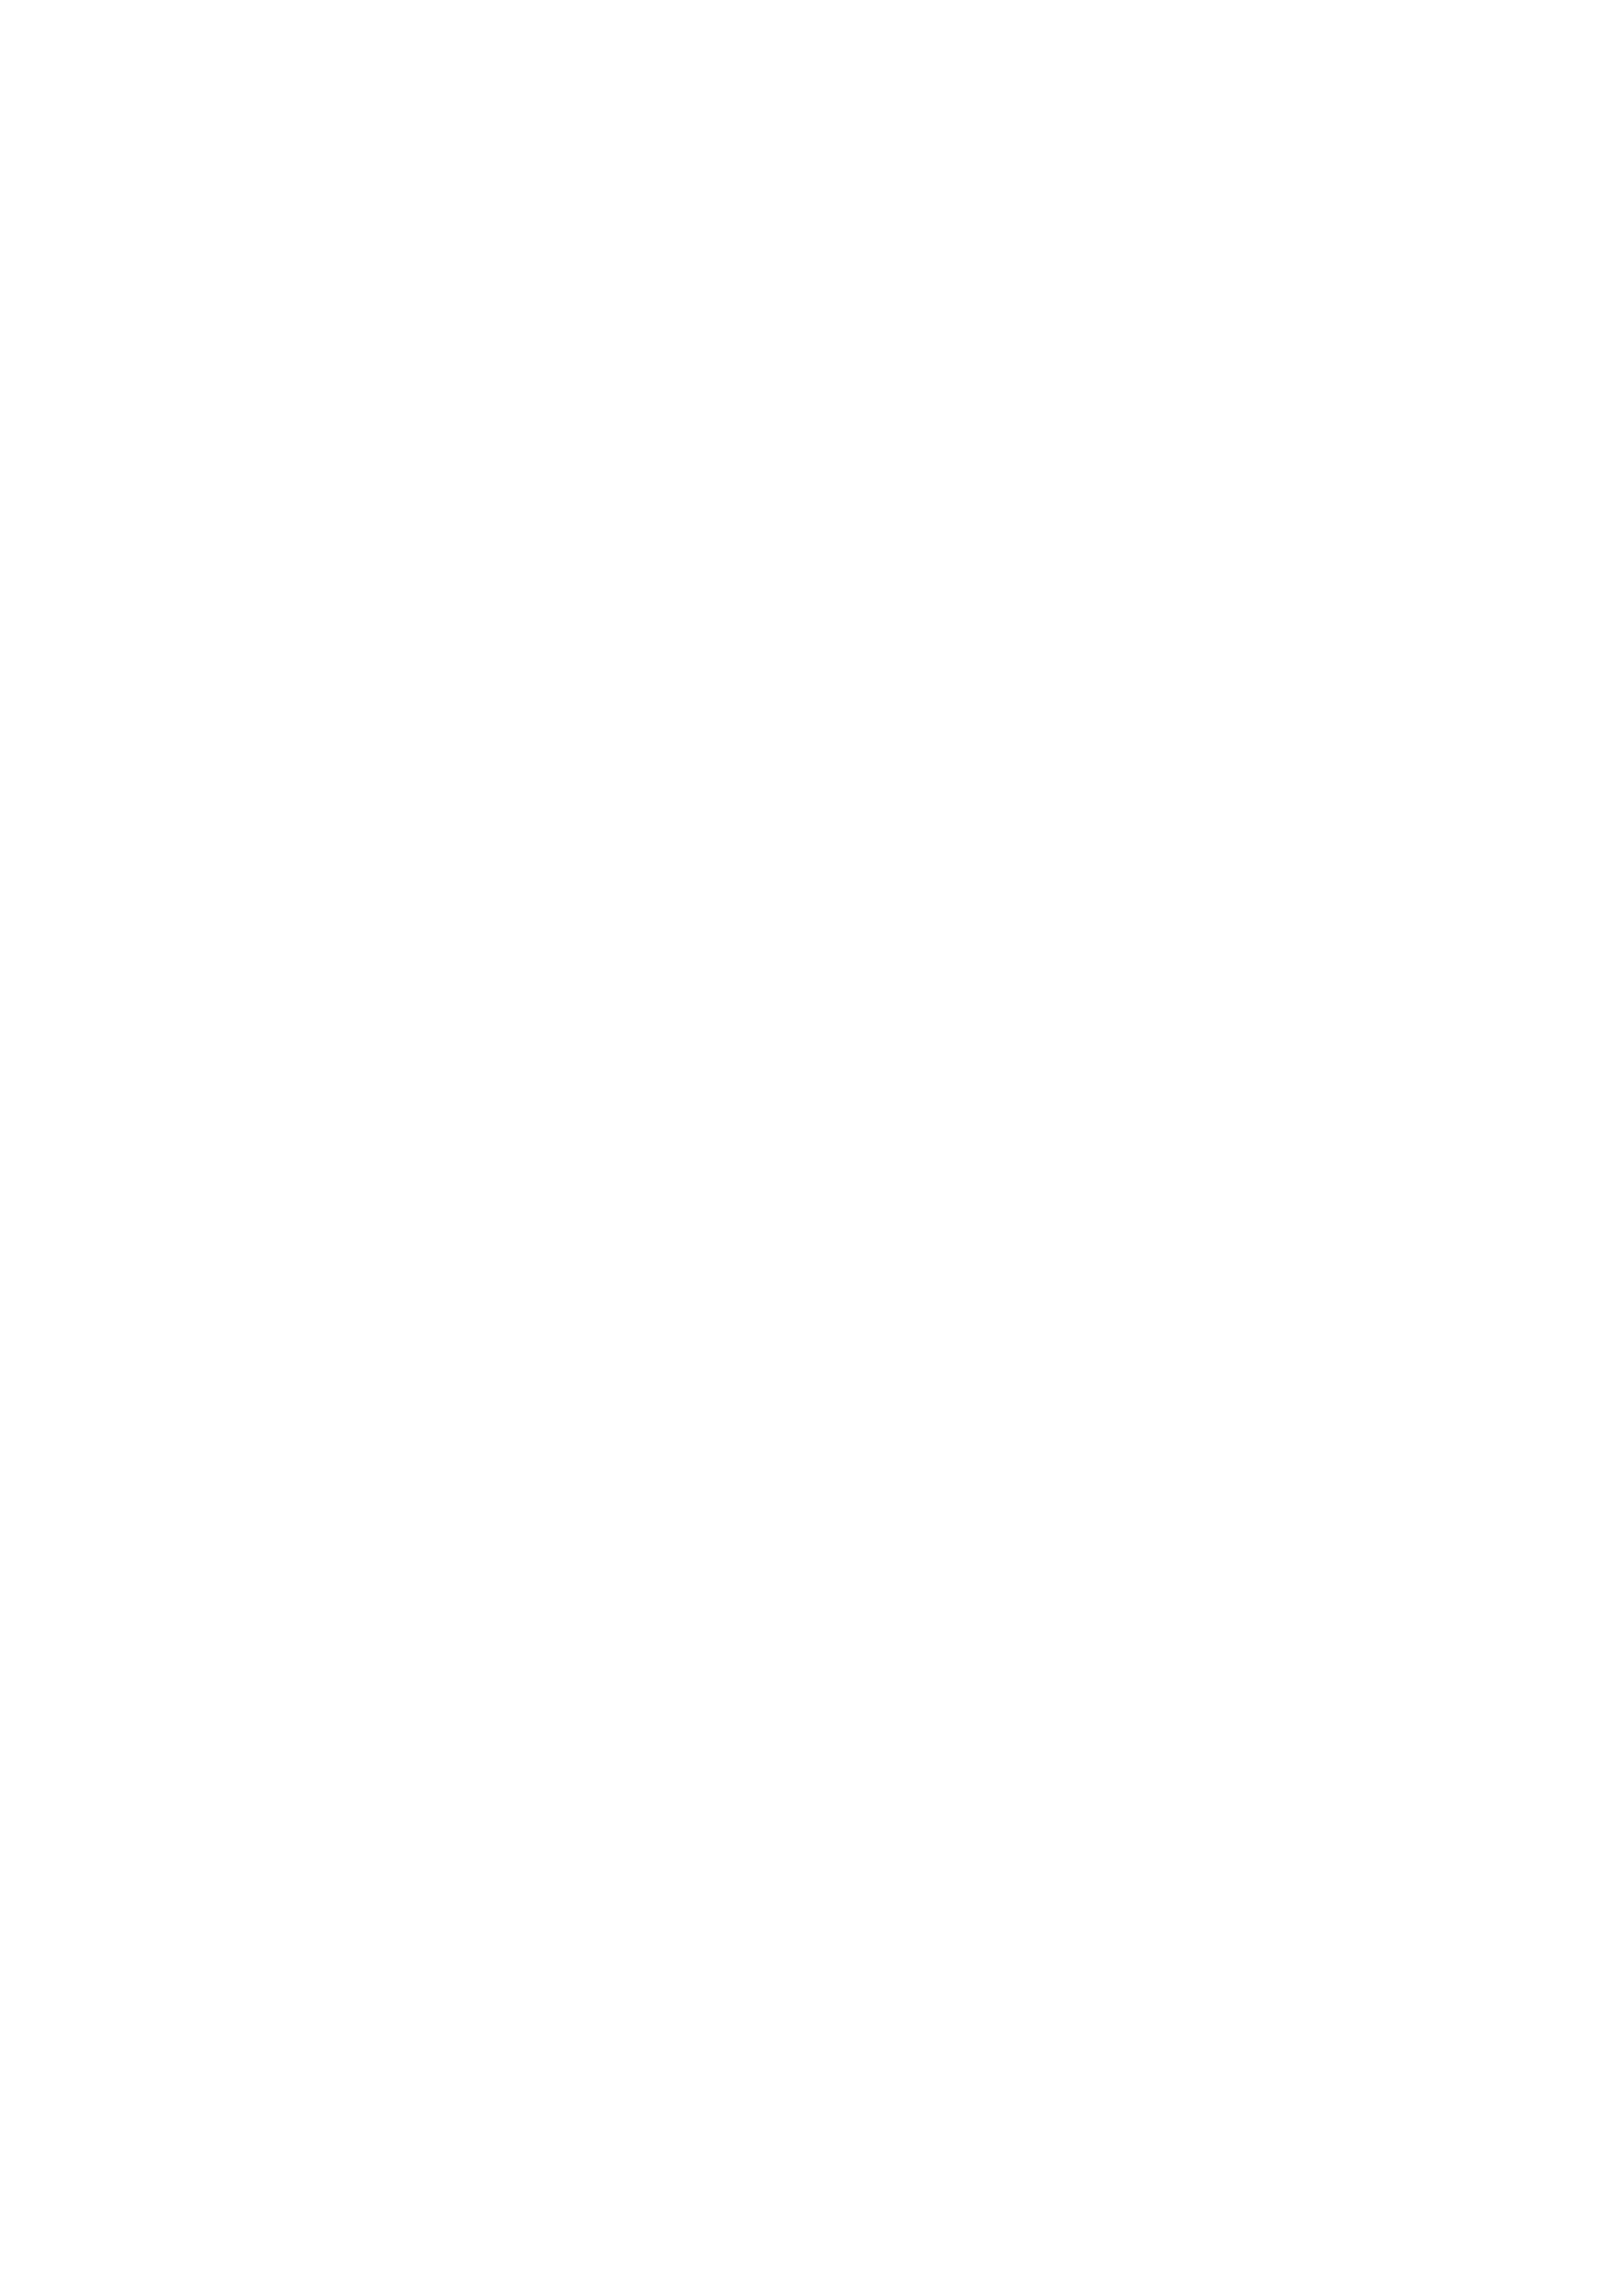 UMW Holdings